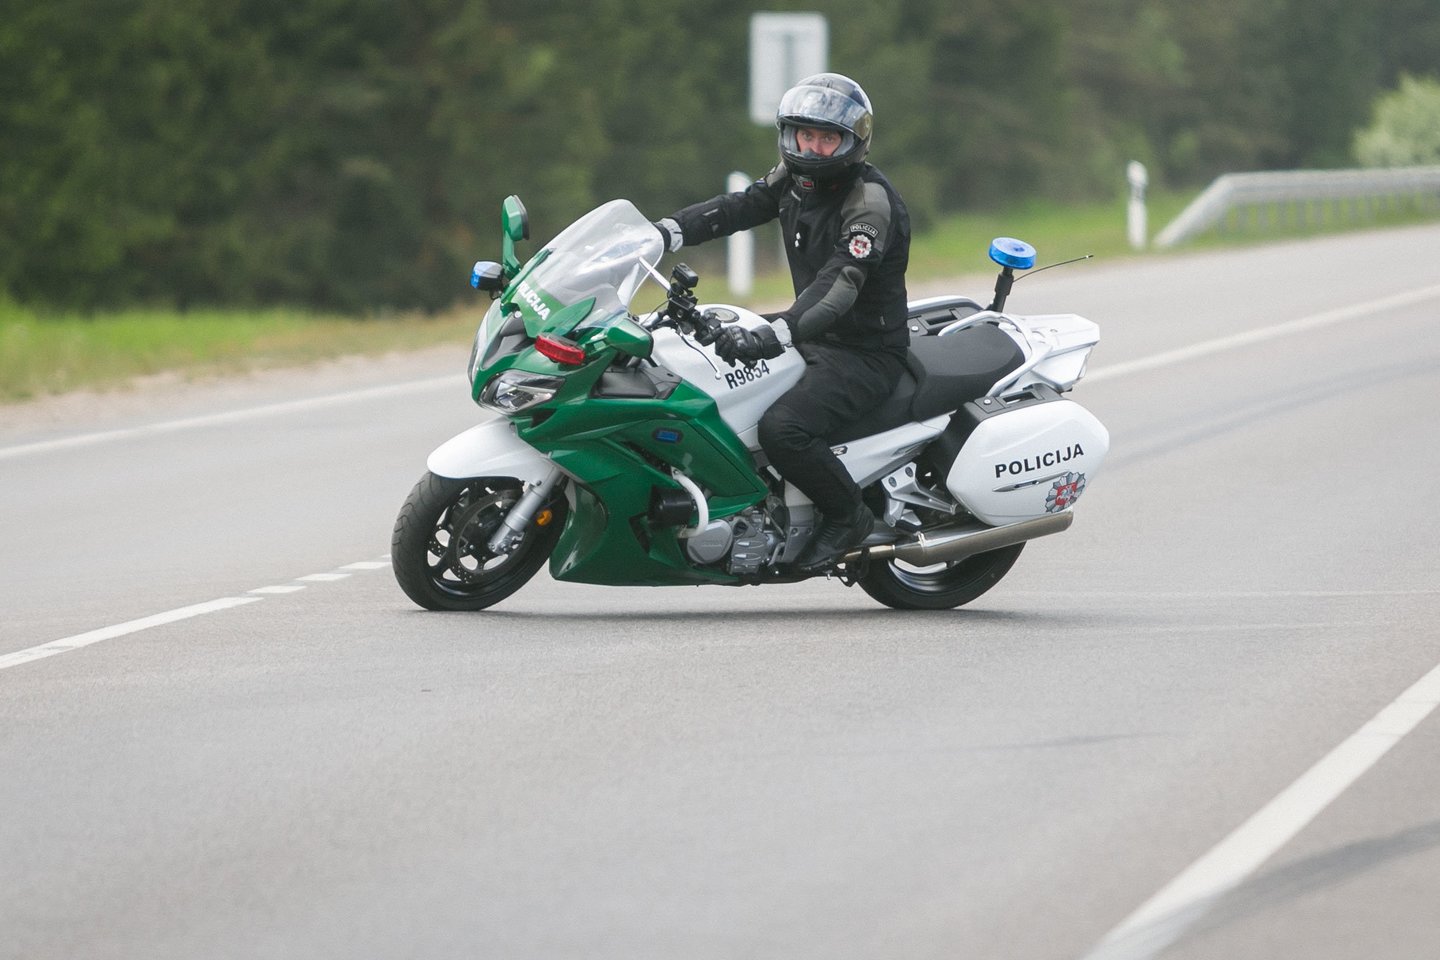 Dažniausiai fiksuojami motociklininkų pažeidimai yra leistino greičio viršijimas, pavojingo ar chuliganiško vairavimo atvejai, posūkių signalų nerodymas.<br>T.Bauro nuotr.